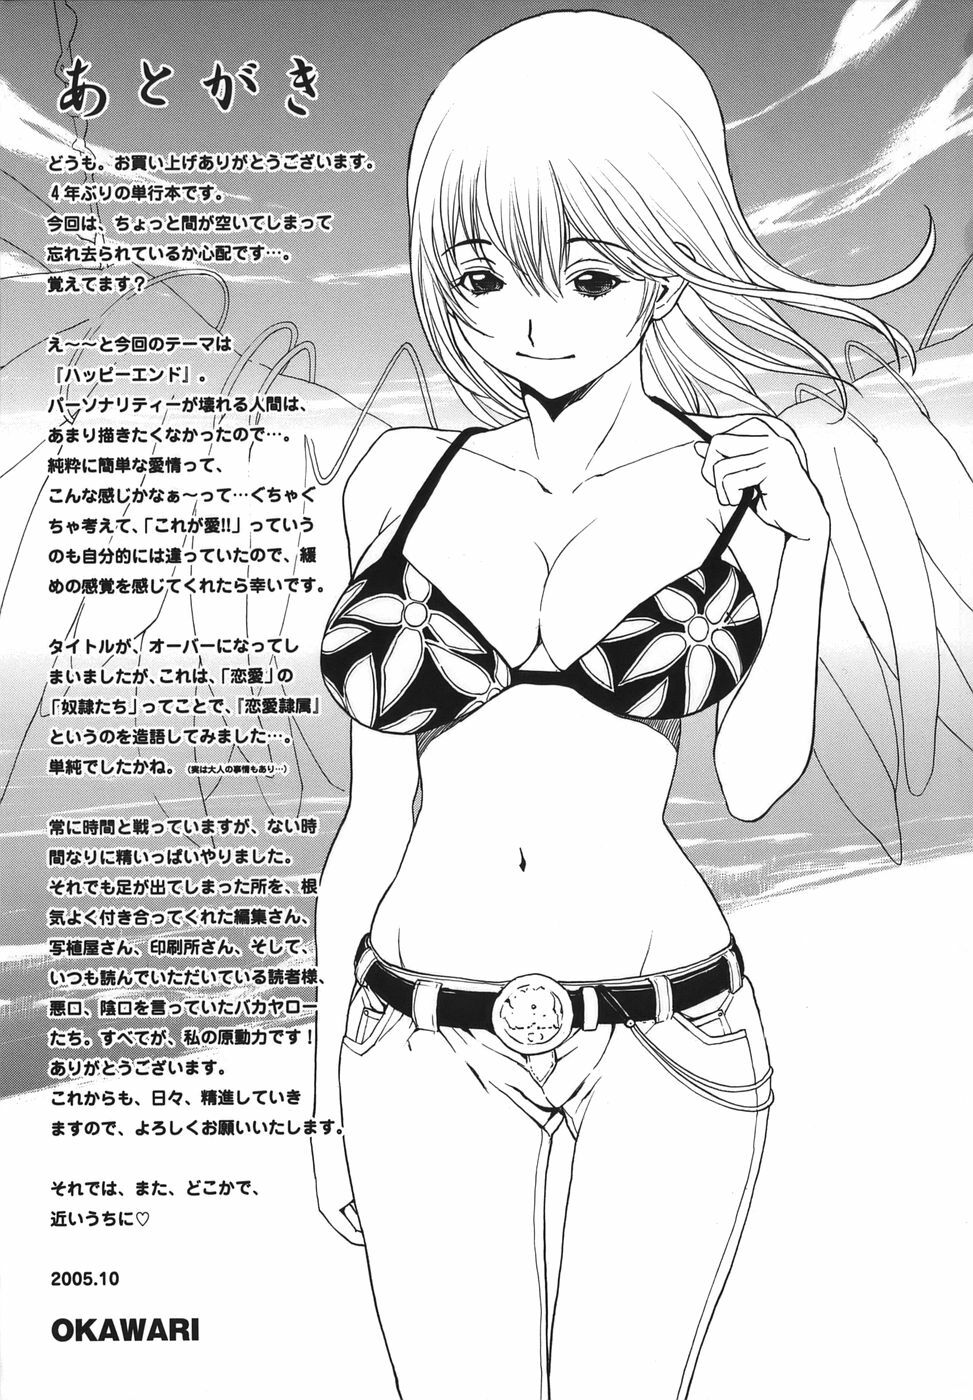 [OKAWARI] Renai Reizoku - Love Subordination page 173 full